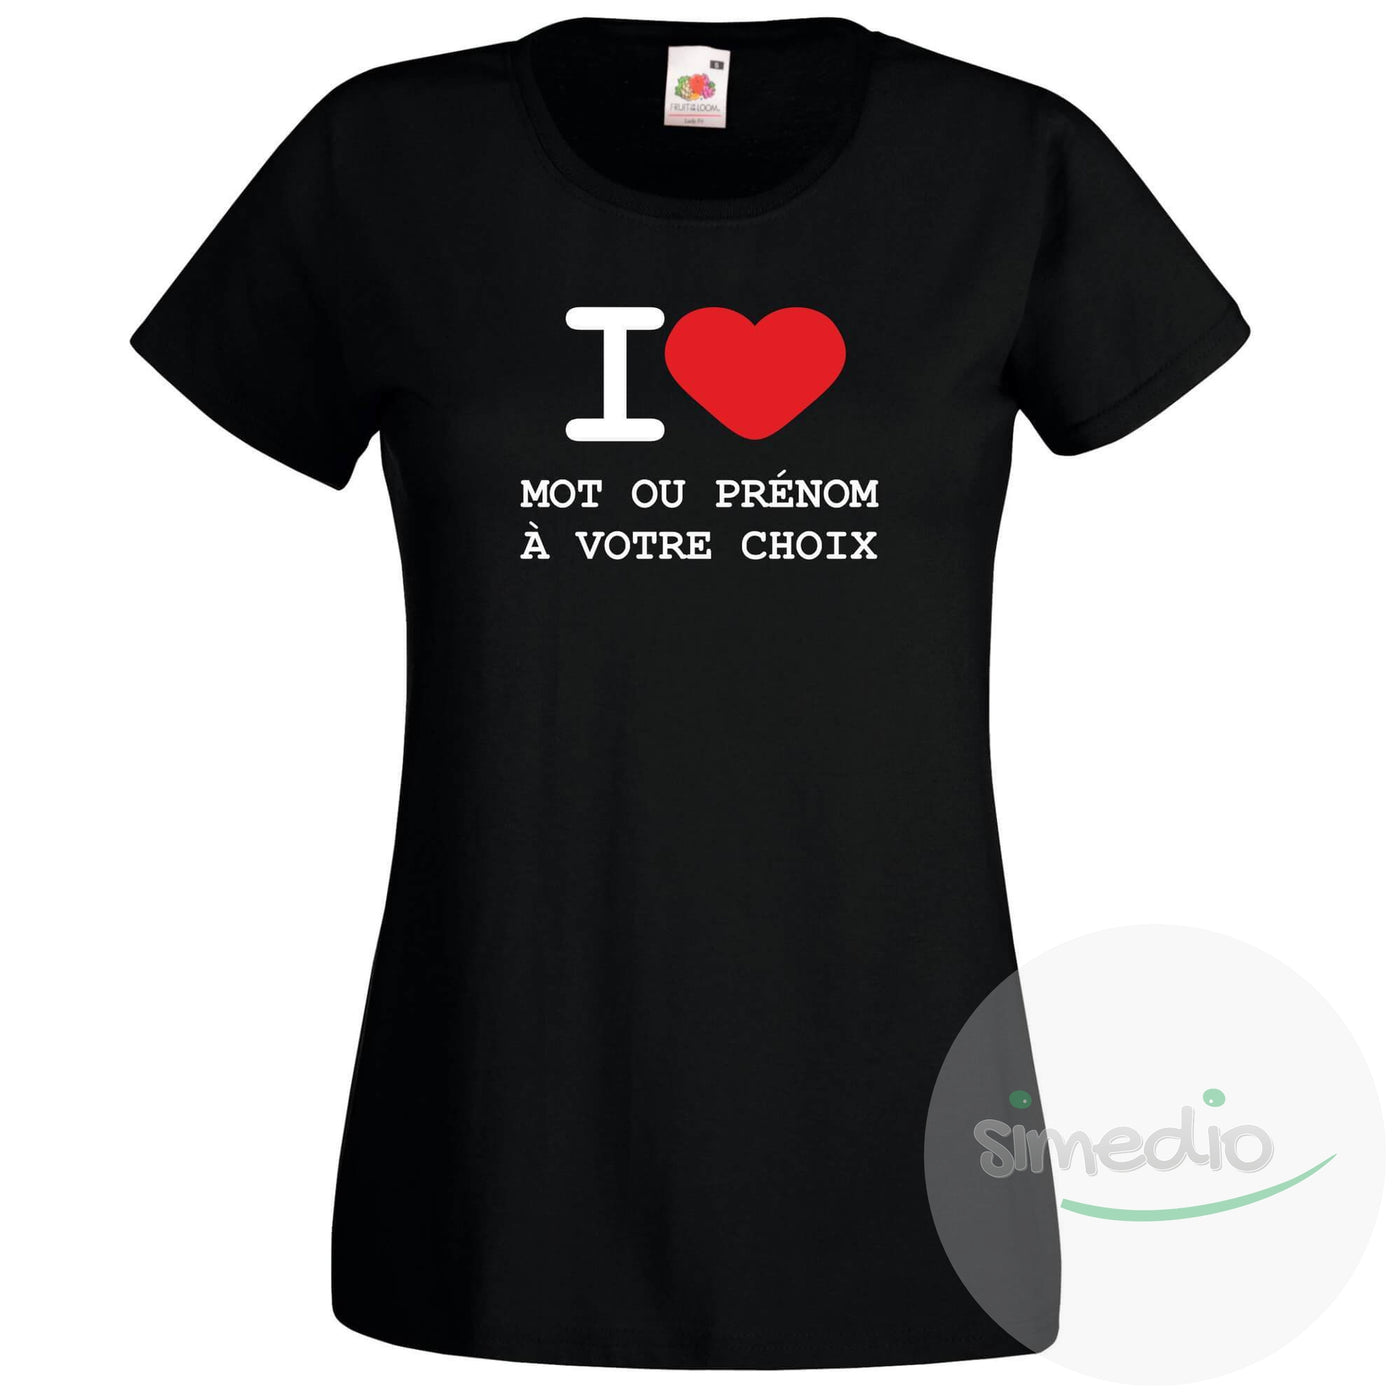 T-shirt original : I LOVE + prénom ou mot à votre choix à imprimer, Noir, S, Femme - SiMEDIO